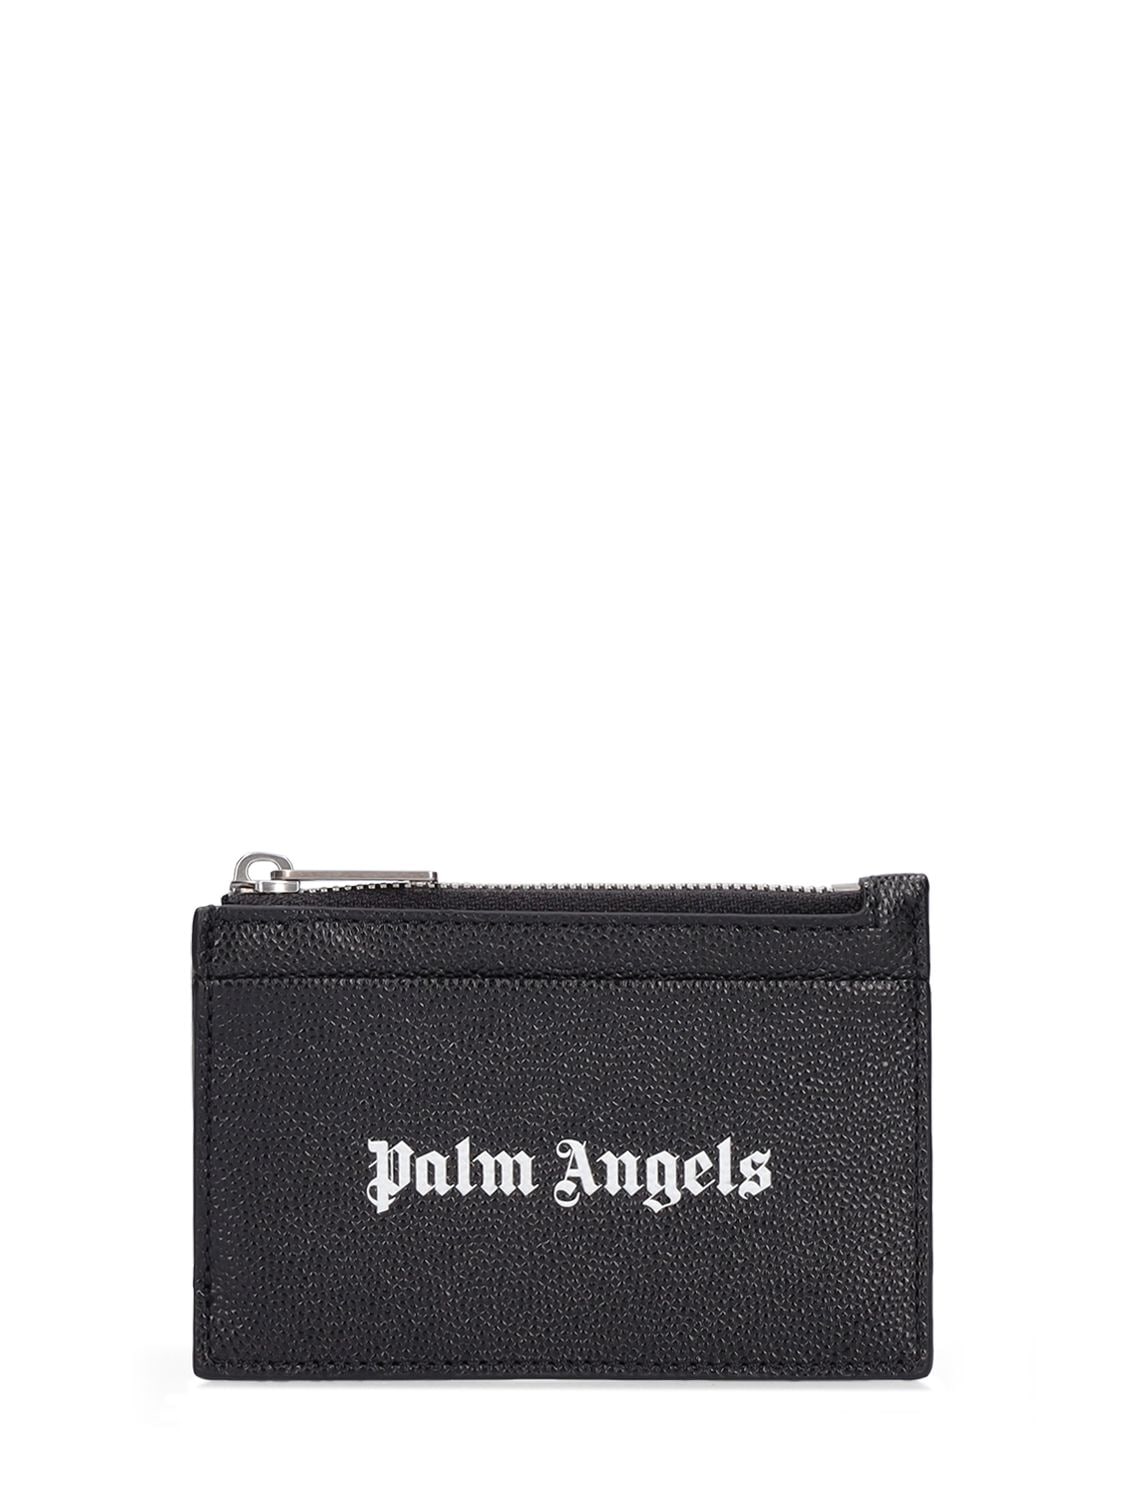 Kartenhülle Aus Leder Mit Zipper Und Logo - PALM ANGELS - Modalova